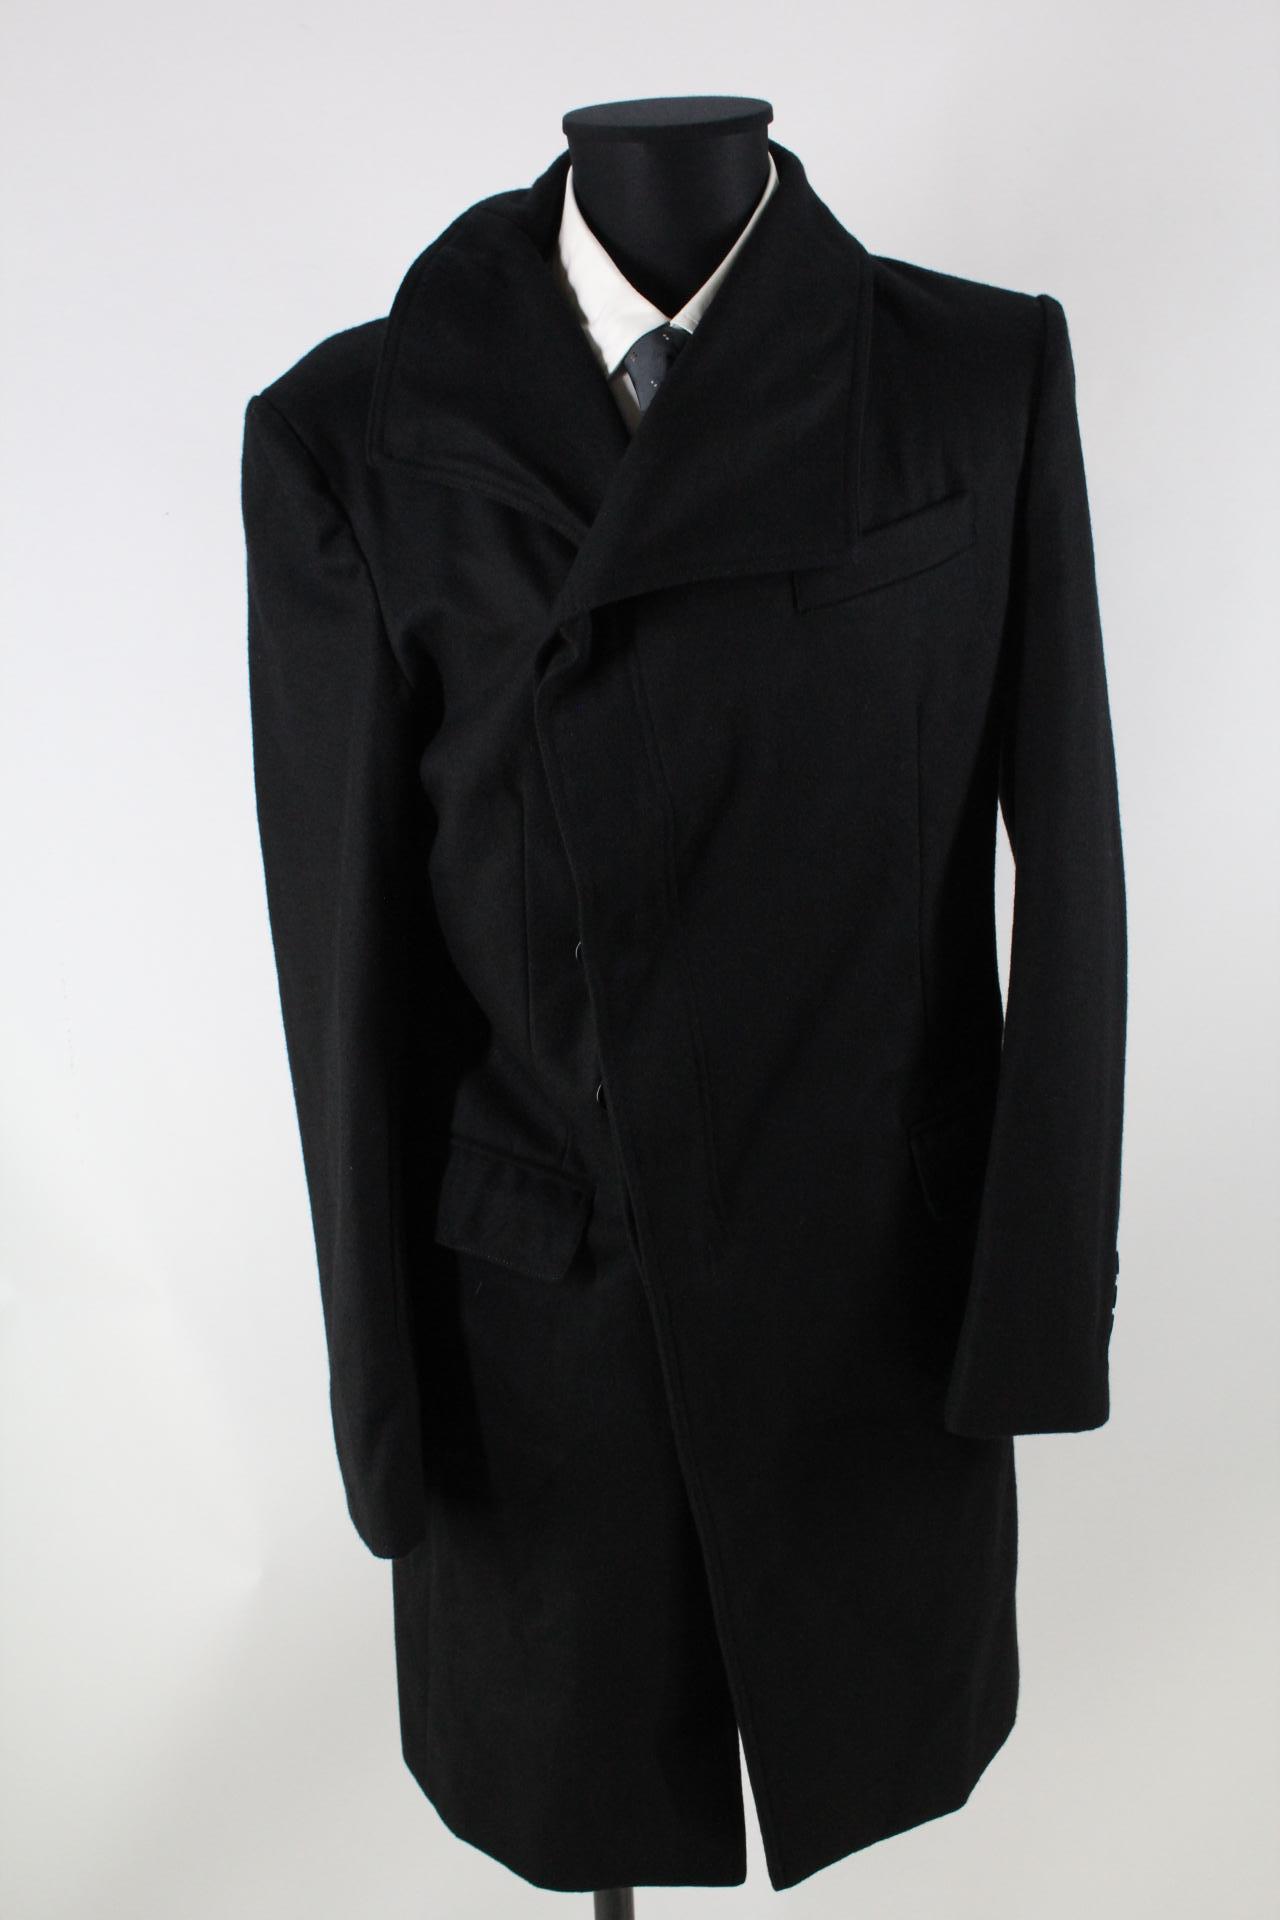 Azoo Herren-Mantel schwarz Größe XL